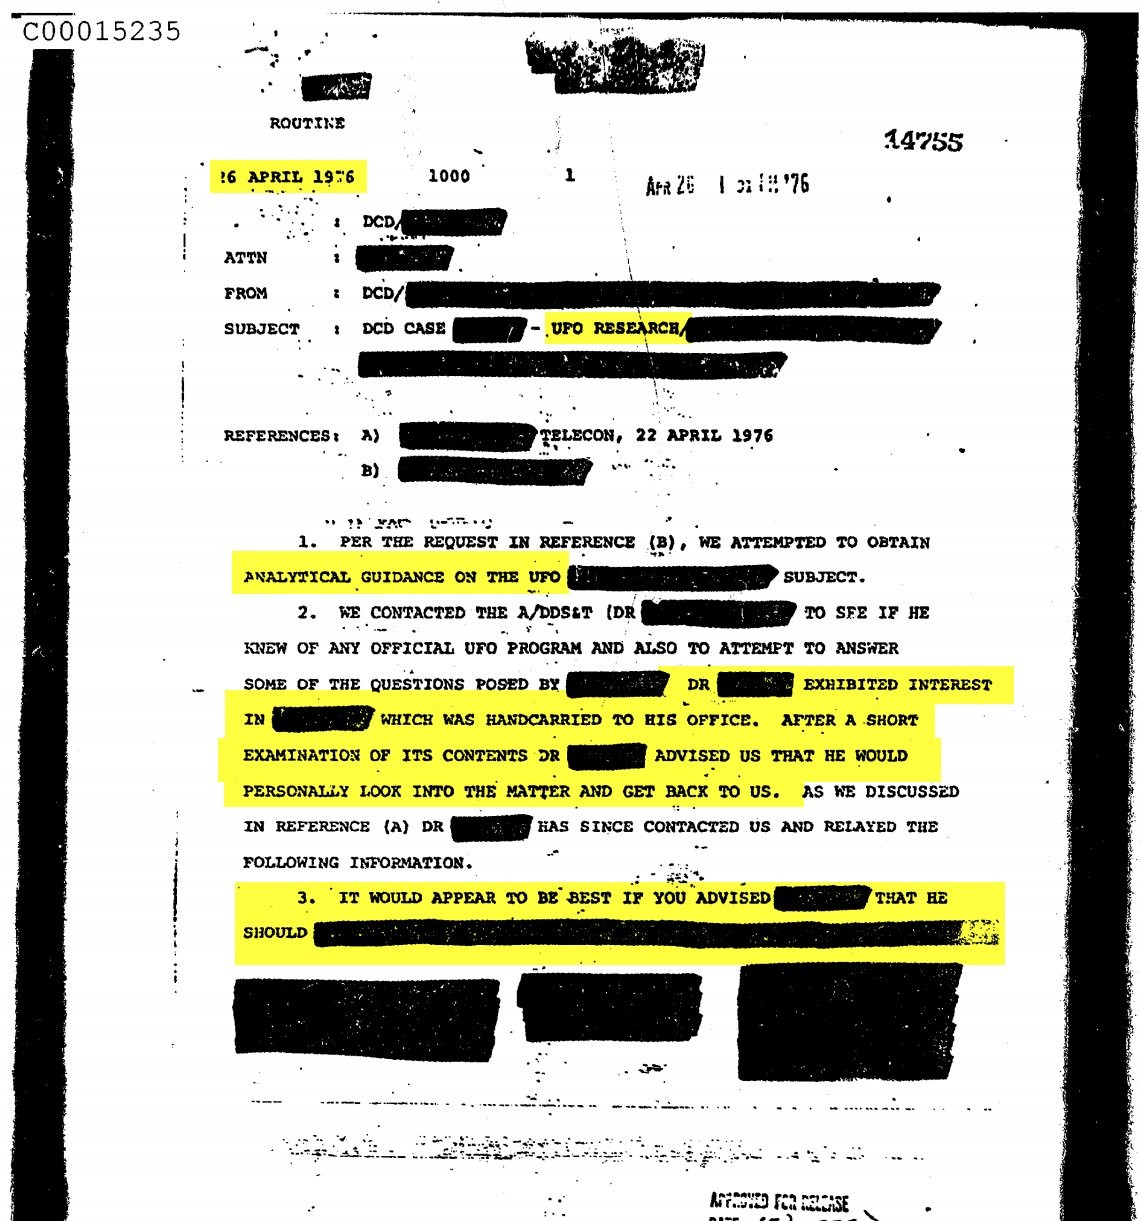 Kompletne archiwum CIA o UFO dostępne dla wszystkich. Część dokumentów ujawniono po raz pierwszy